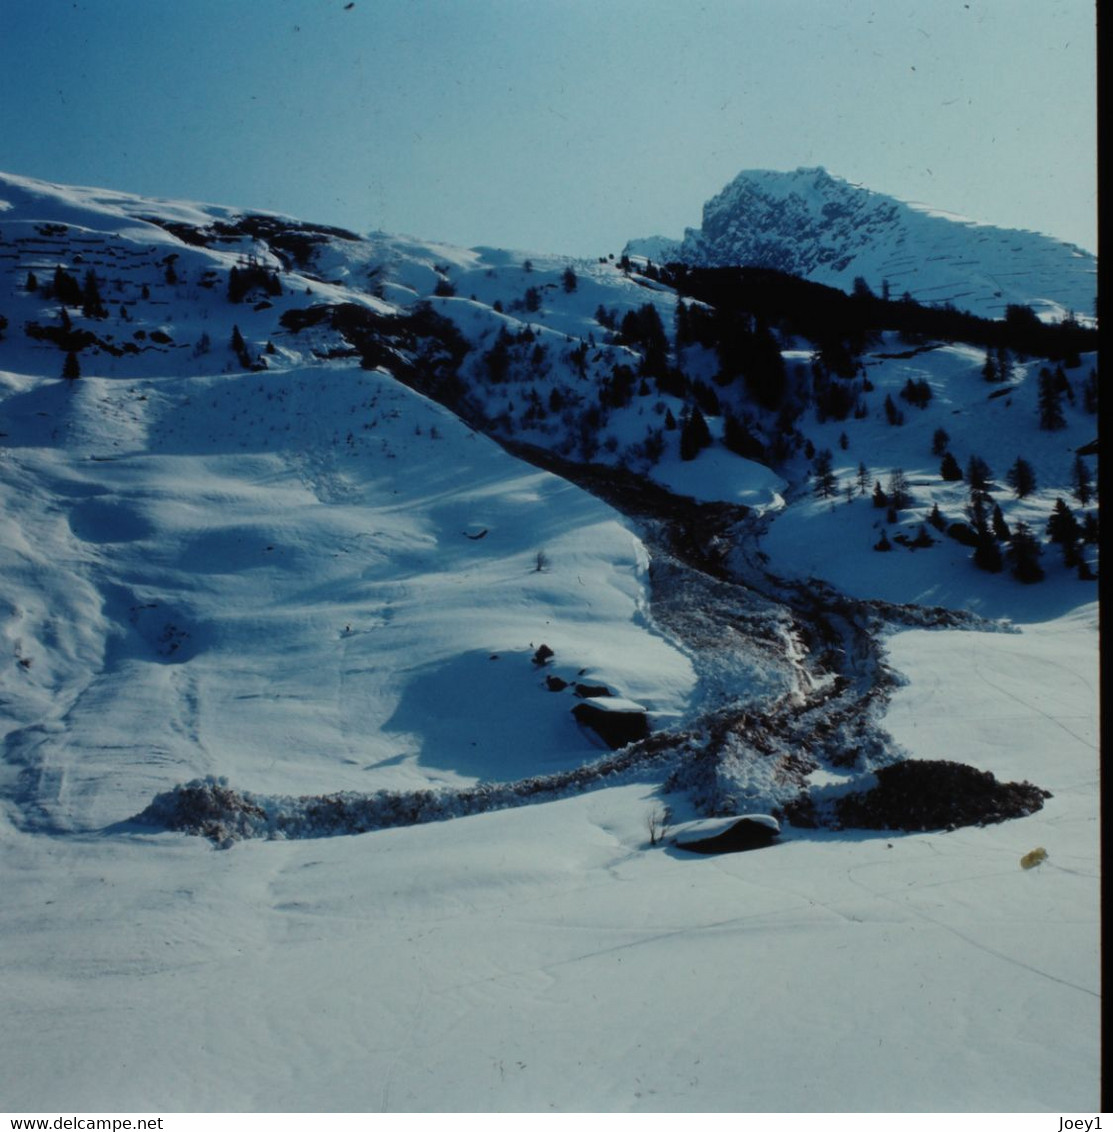 Photos André Roch Alpiniste Spécialiste Des Avalanches,18 Ekta Originaux 6/6,Davos Et Autres 1968,1970 - Diapositive